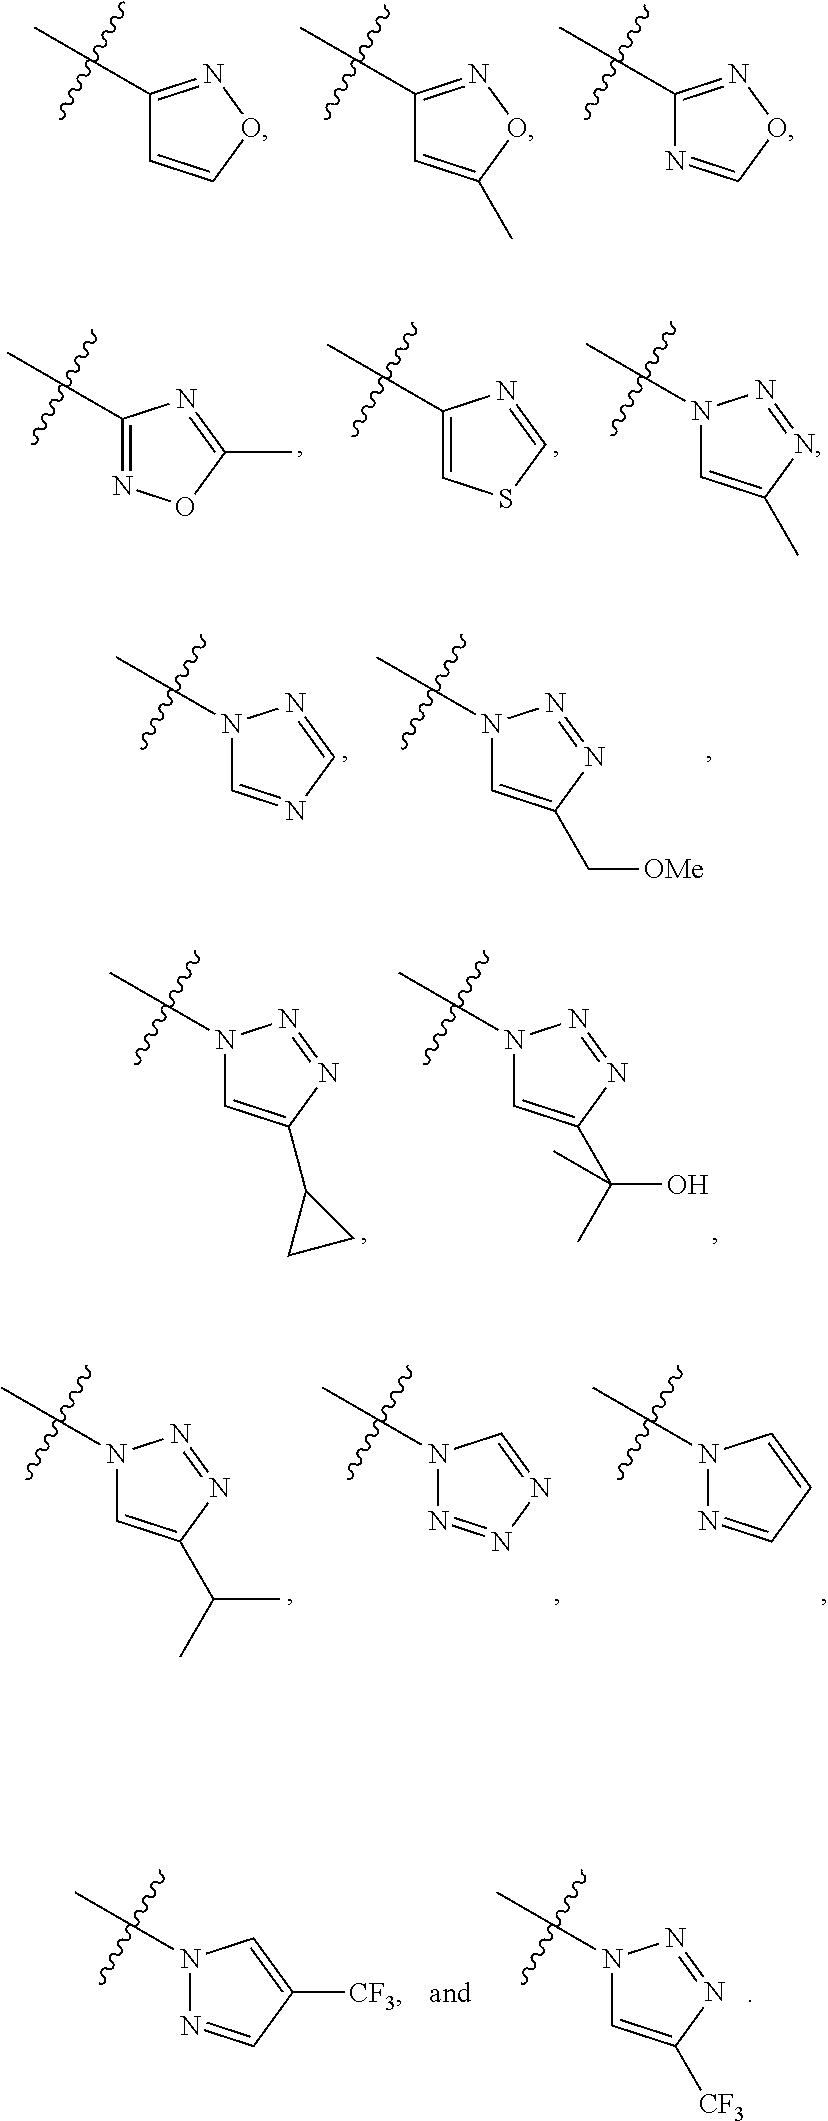 Novel Imidazo[4,5-c]Quinoline And Imidazo[4,5-c][1,5]Naphthyridine Derivatives As LRRK2 Inhibitors